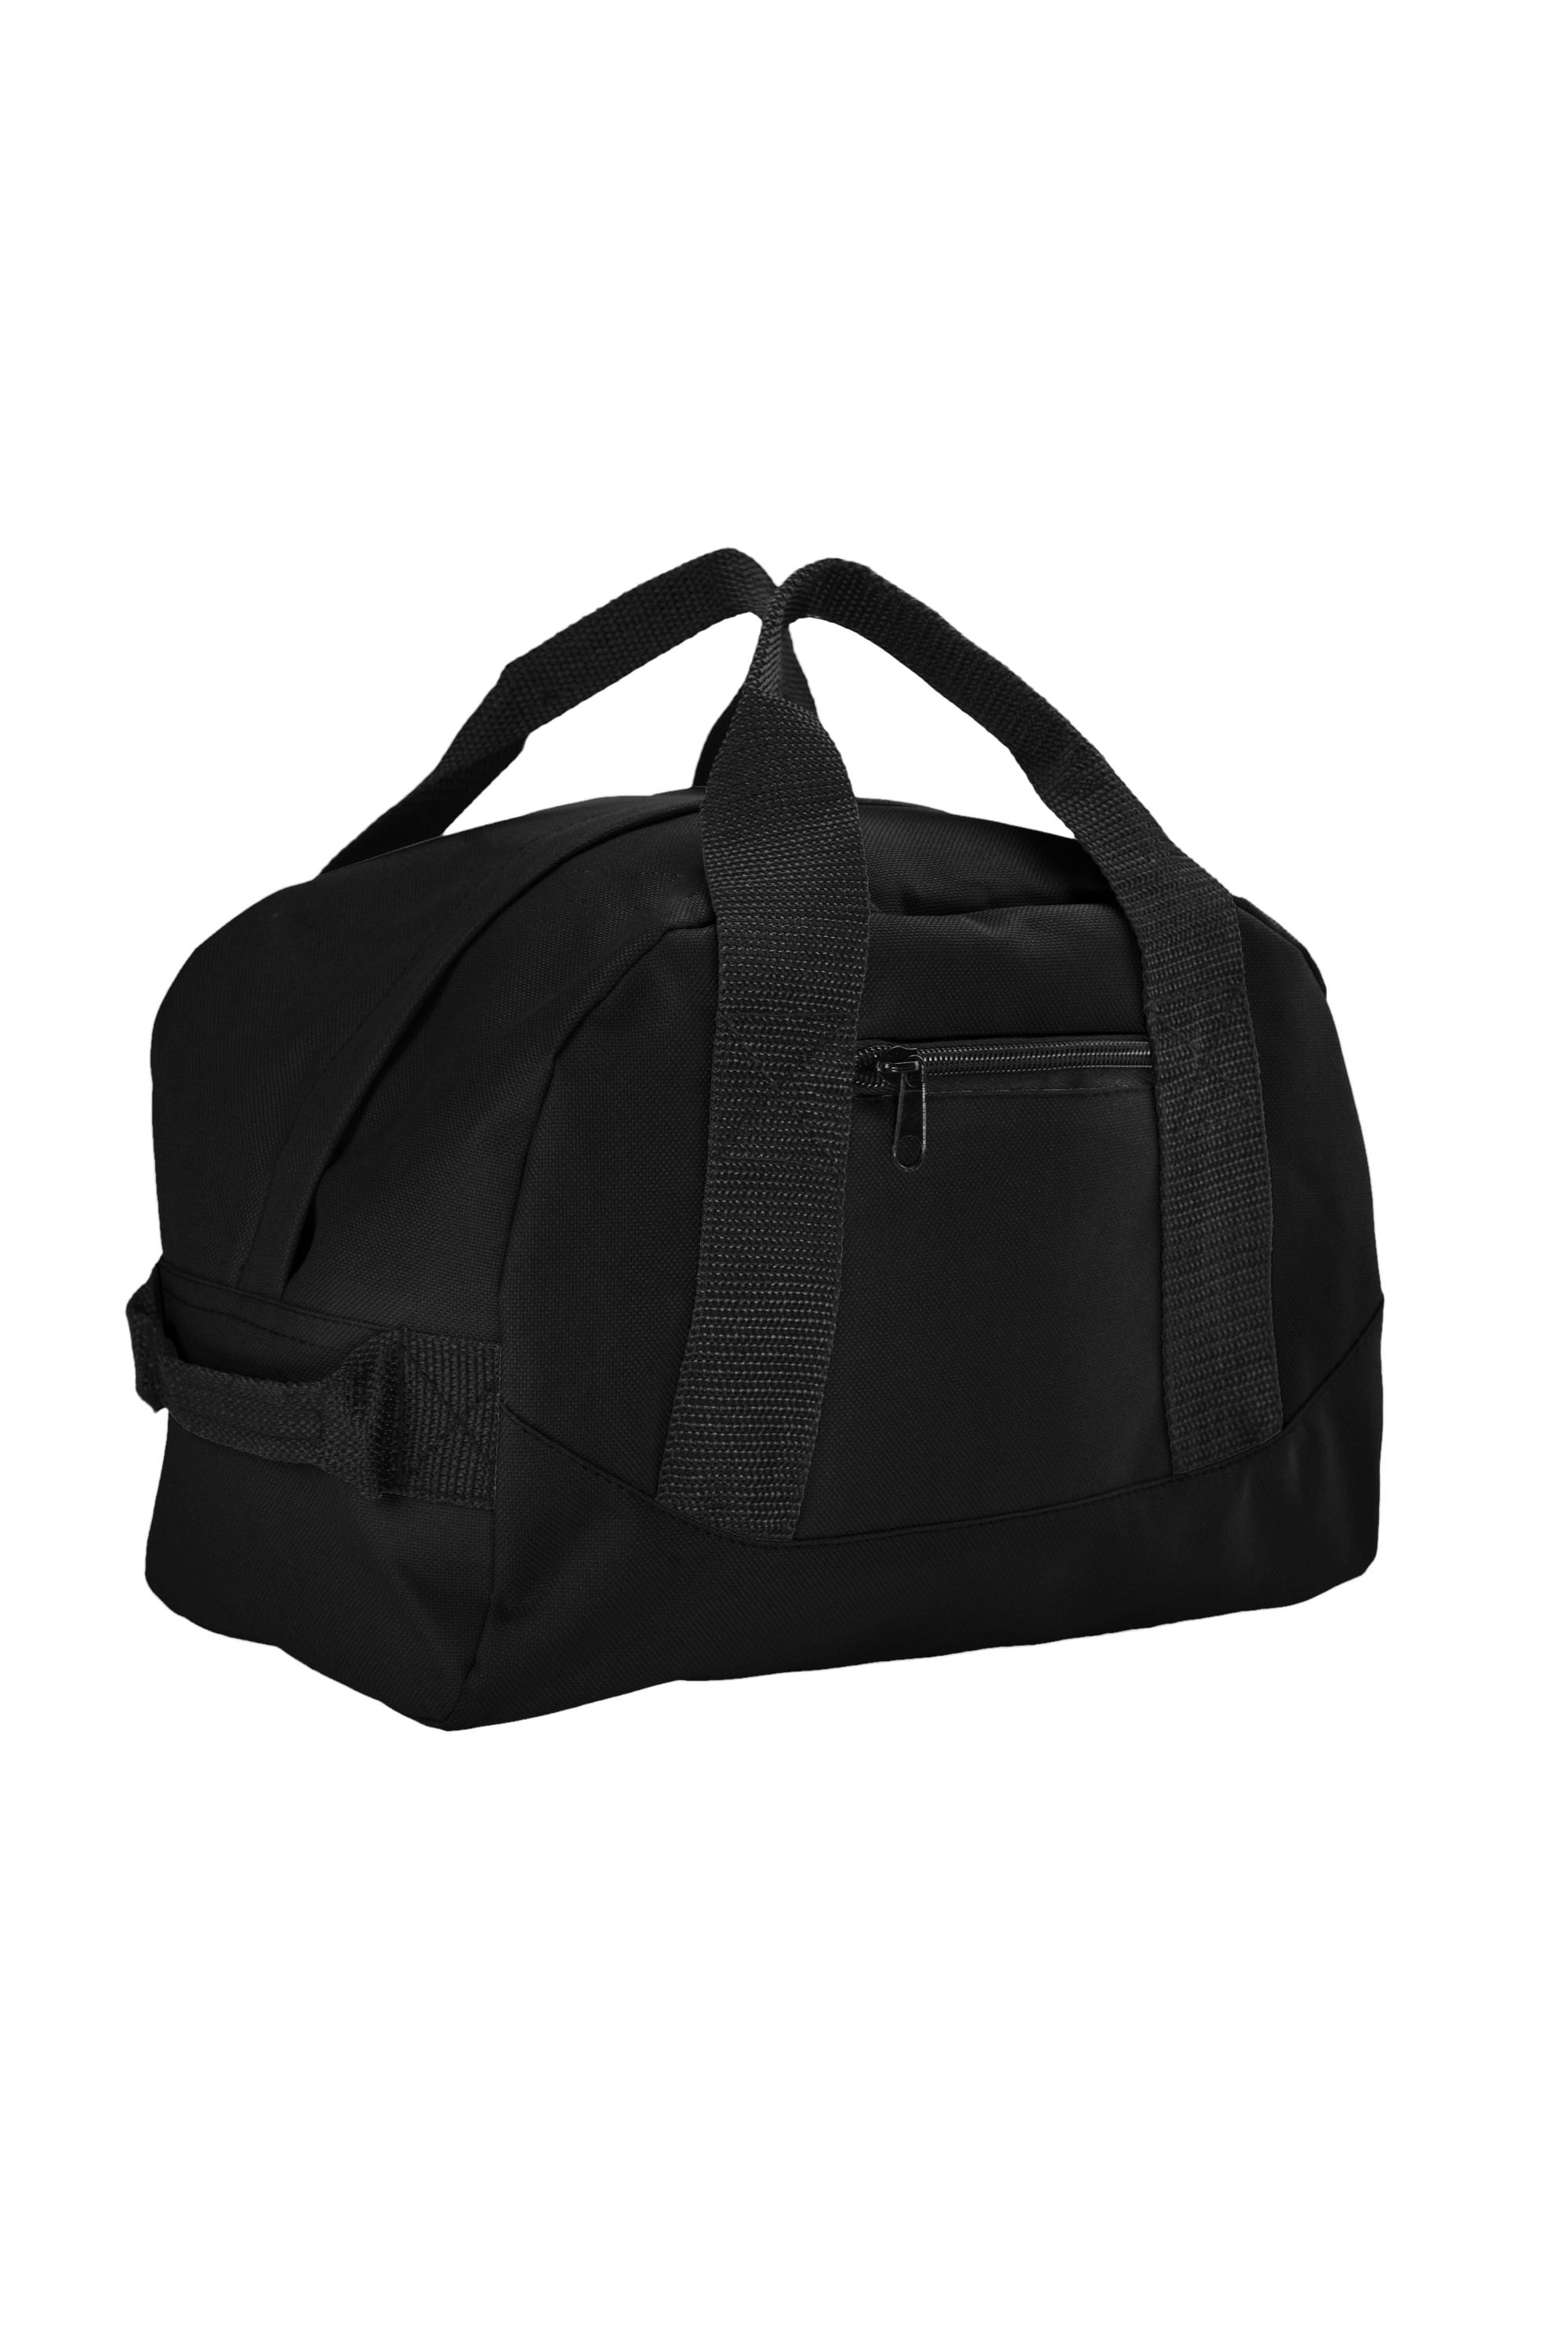 DALIX 12" Mini Duffel Bag Black - Walmart.com